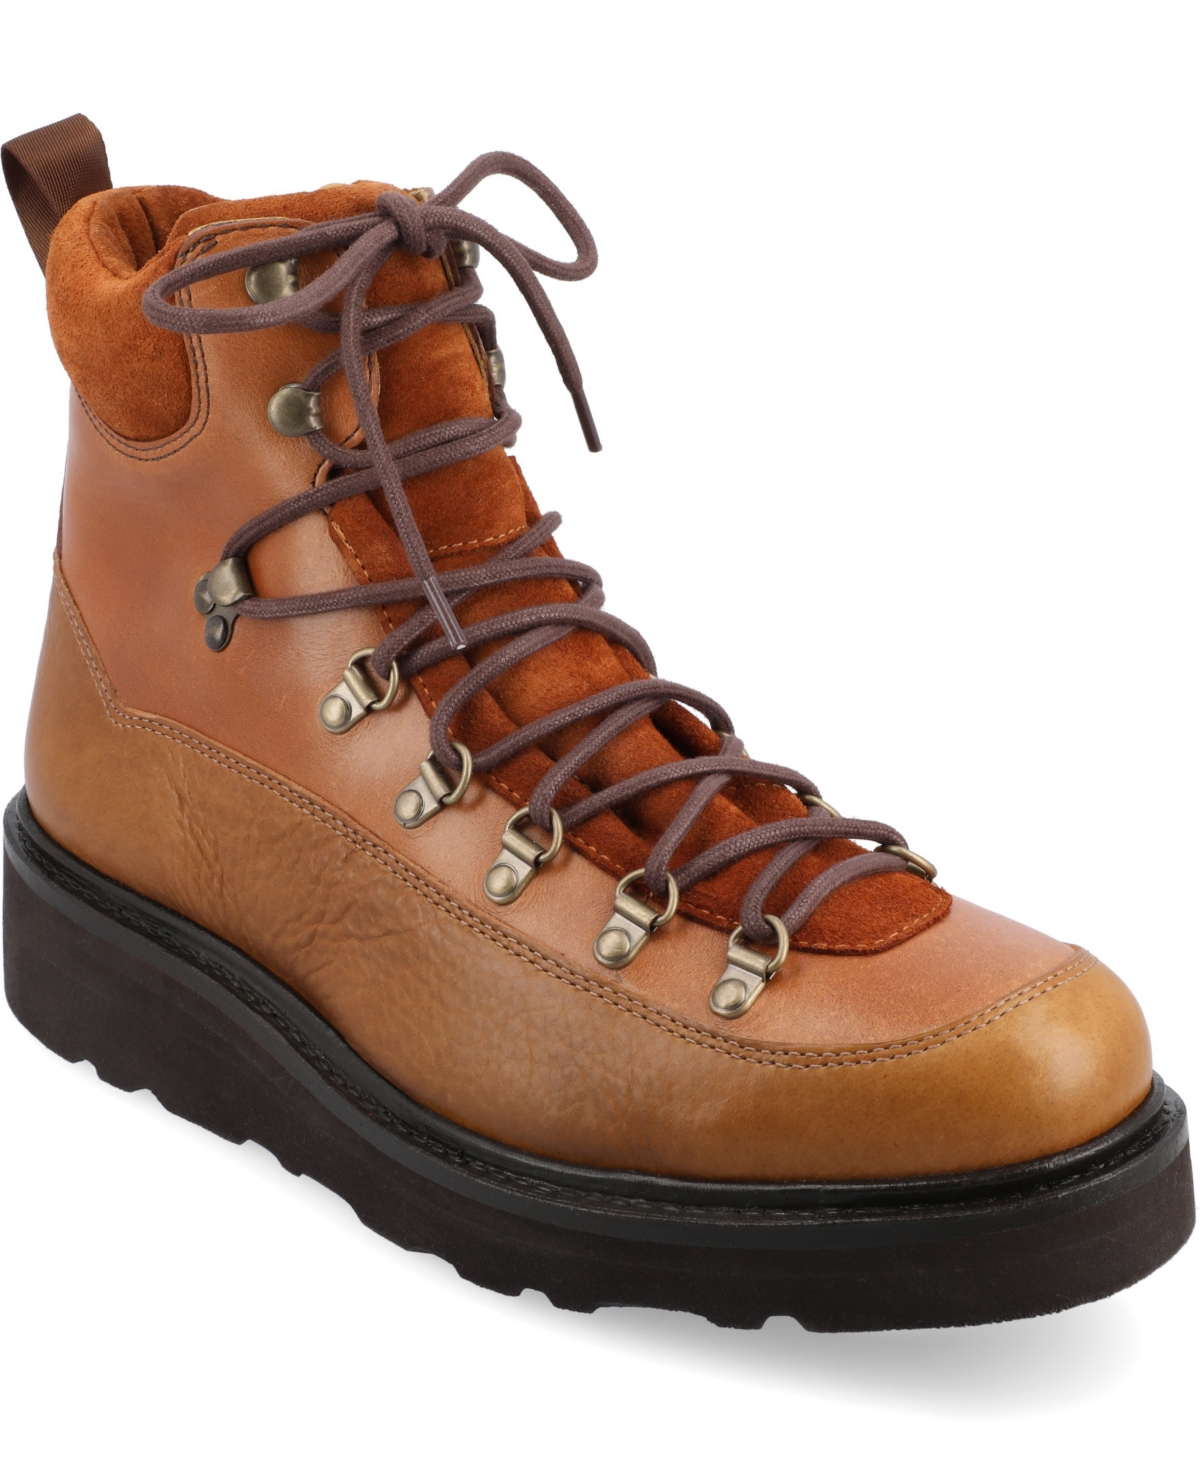 Men's The Alpine Hiker Boot - Honey